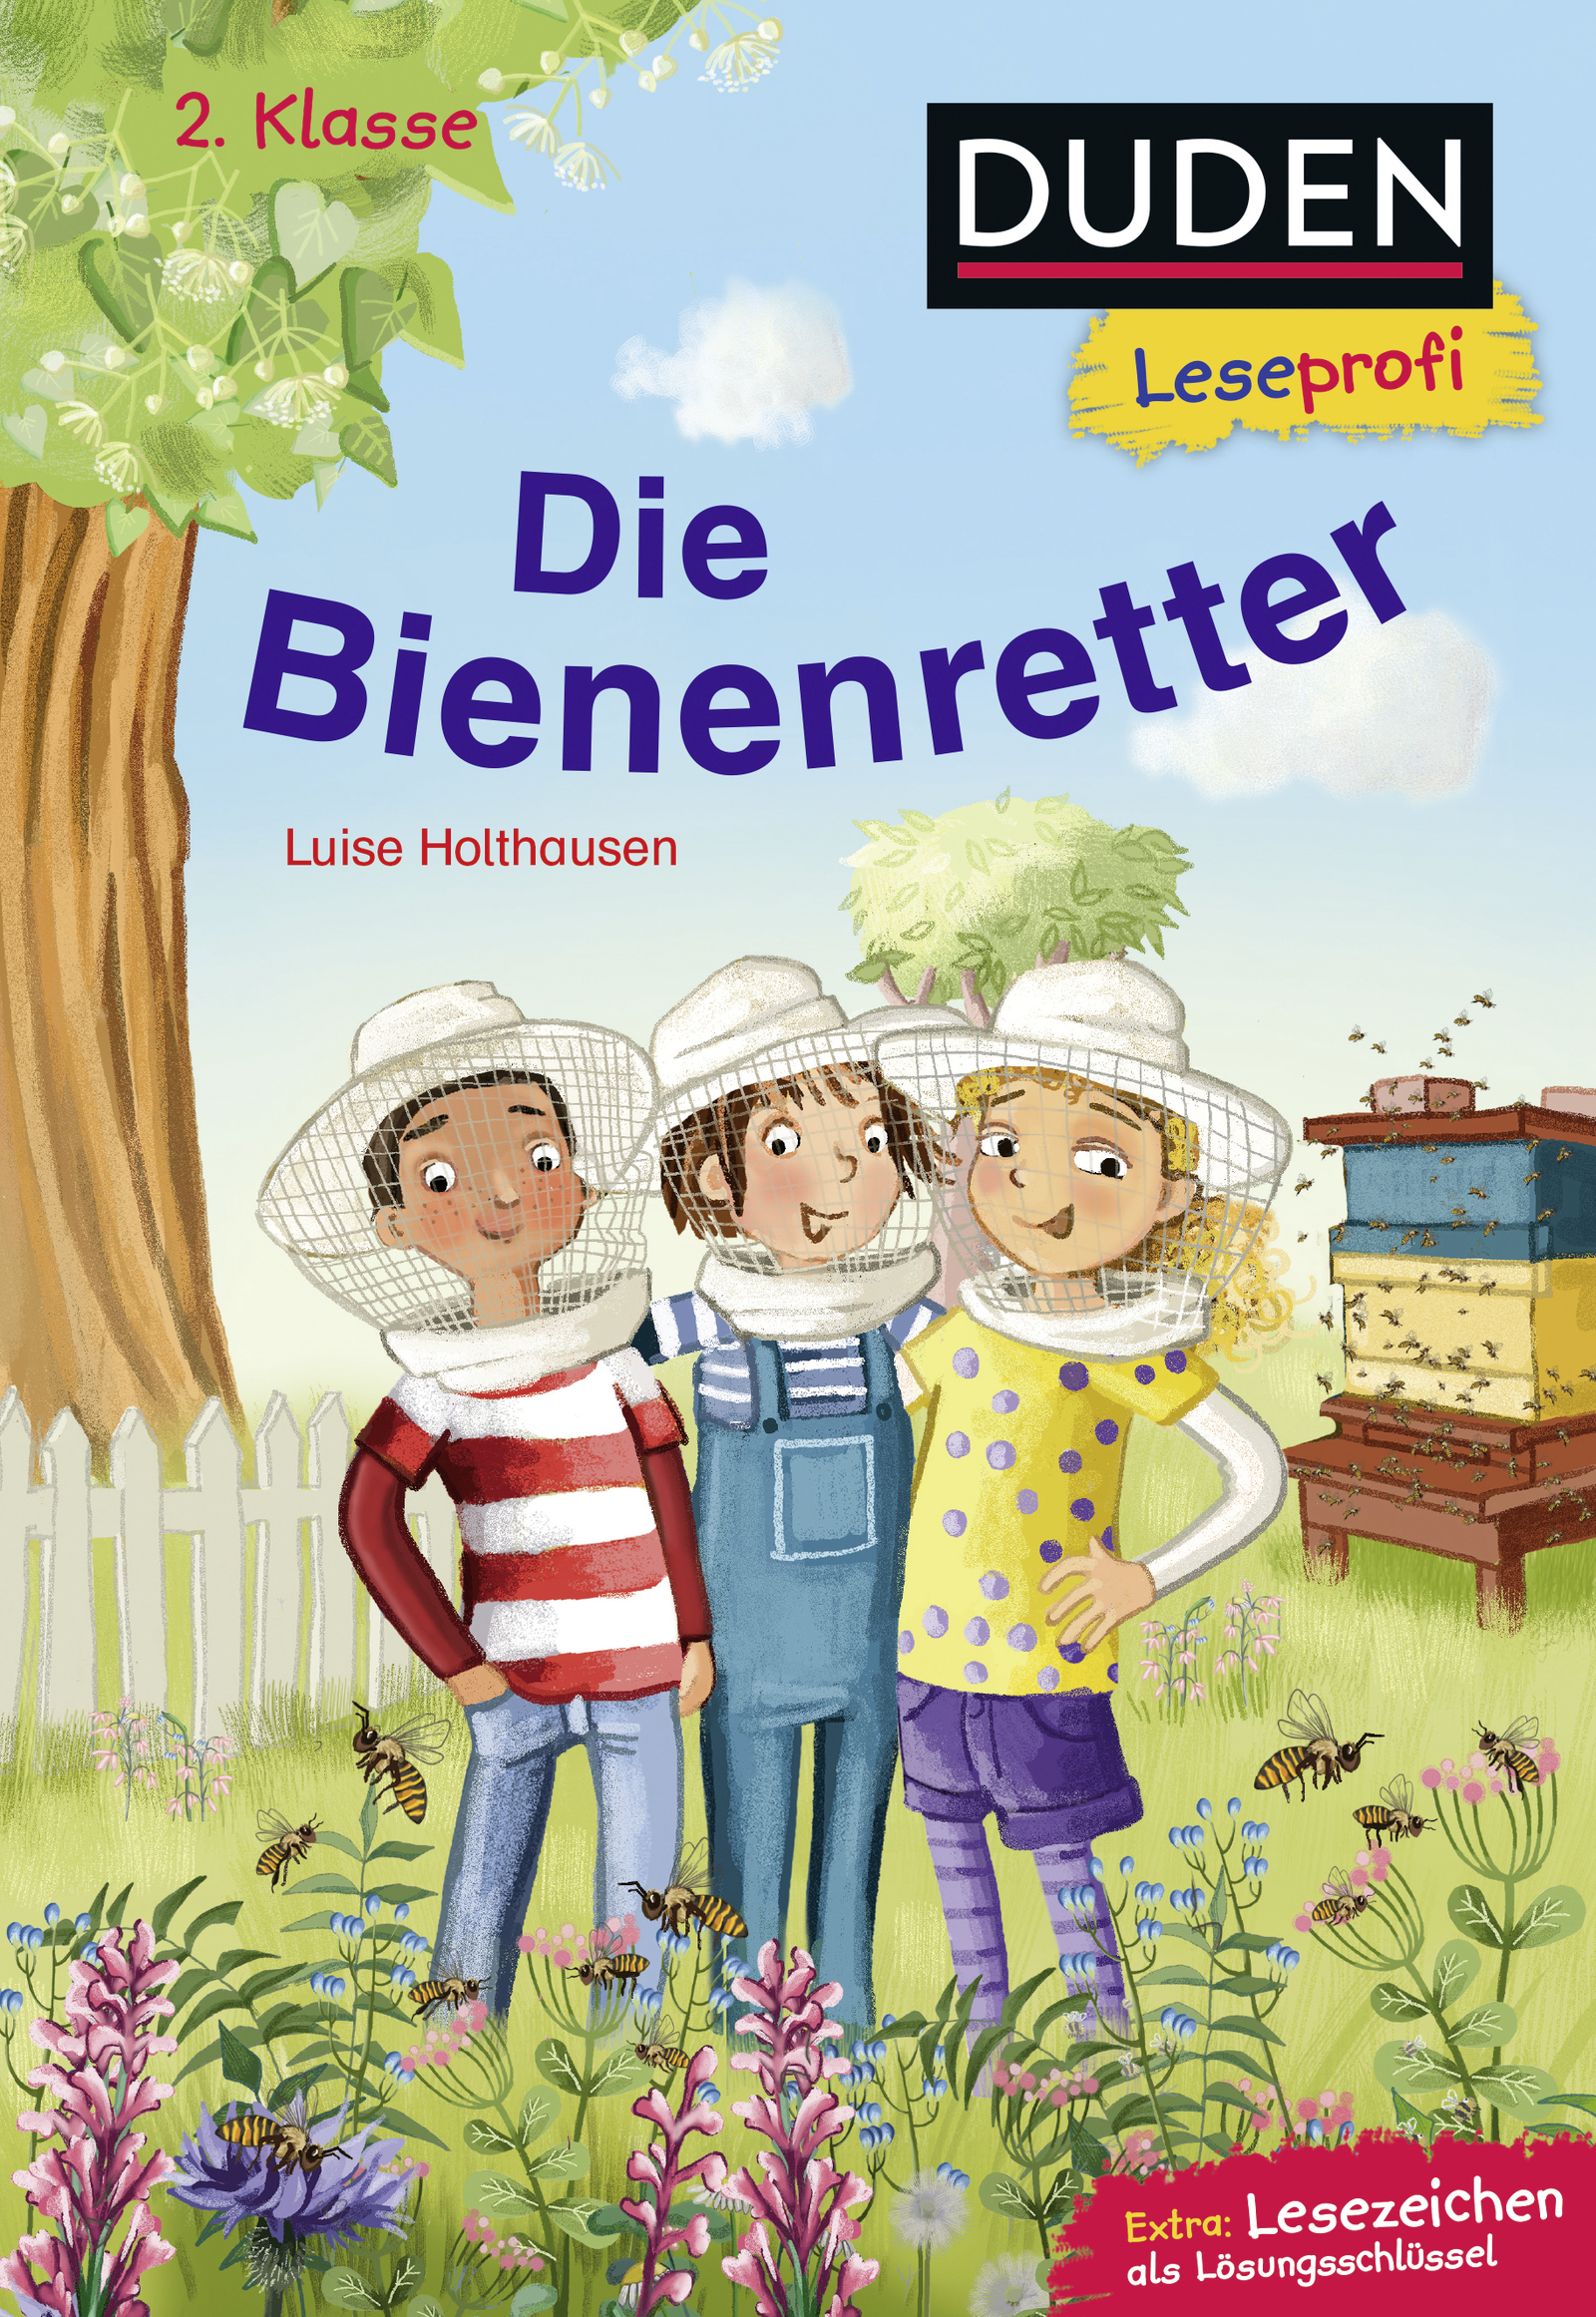 Duden Leseprofi - Die Bienenretter, L. Holthausen, Fischer Verlag